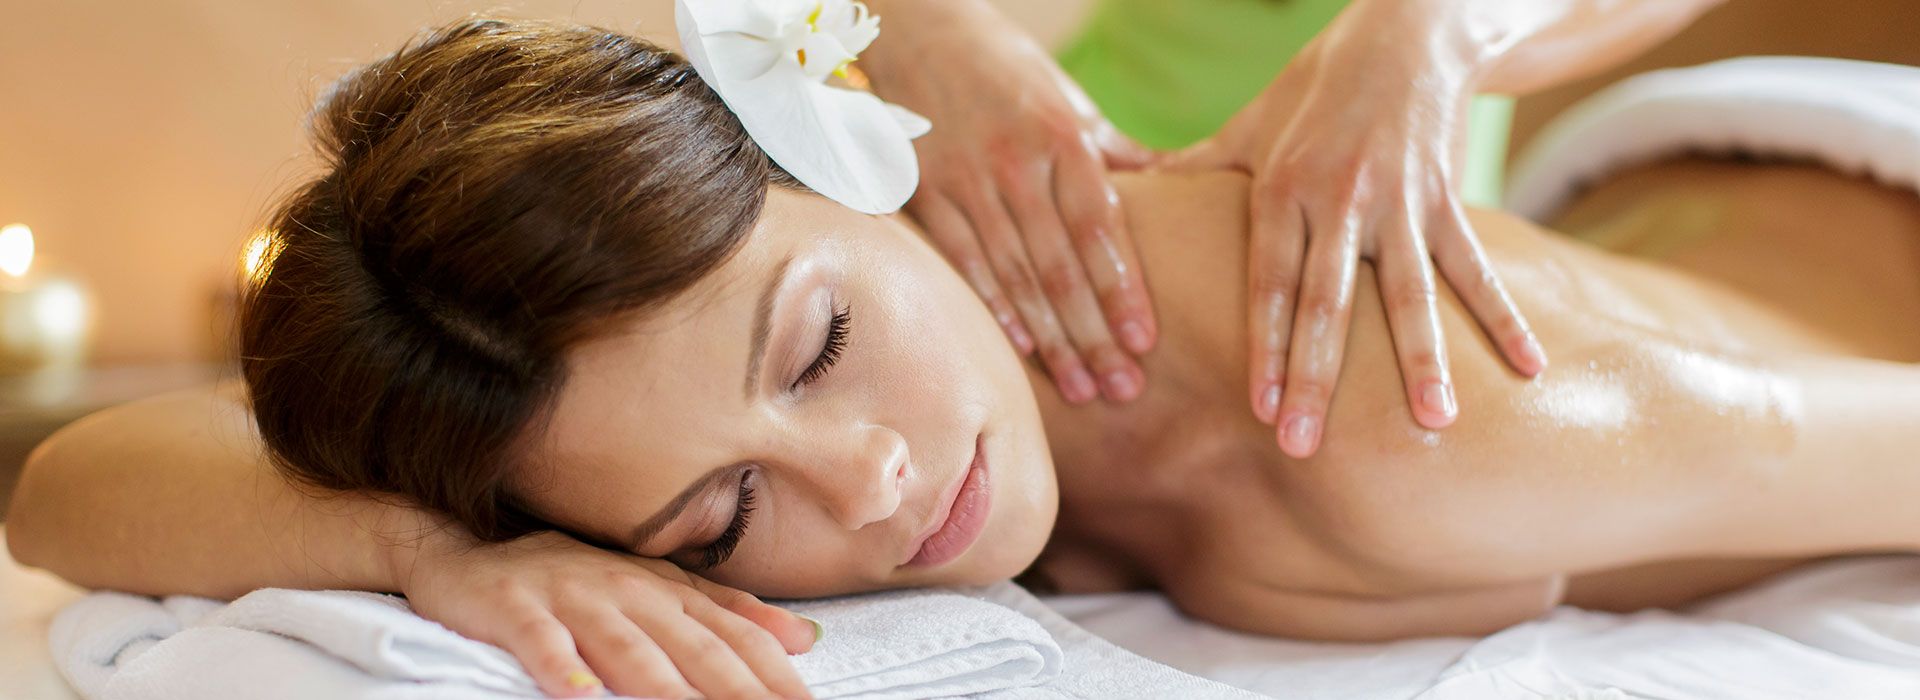 Mettes Velvære - Massage, akupunktur, japansk lifting, kosmetisk akupunktur, i slangerup